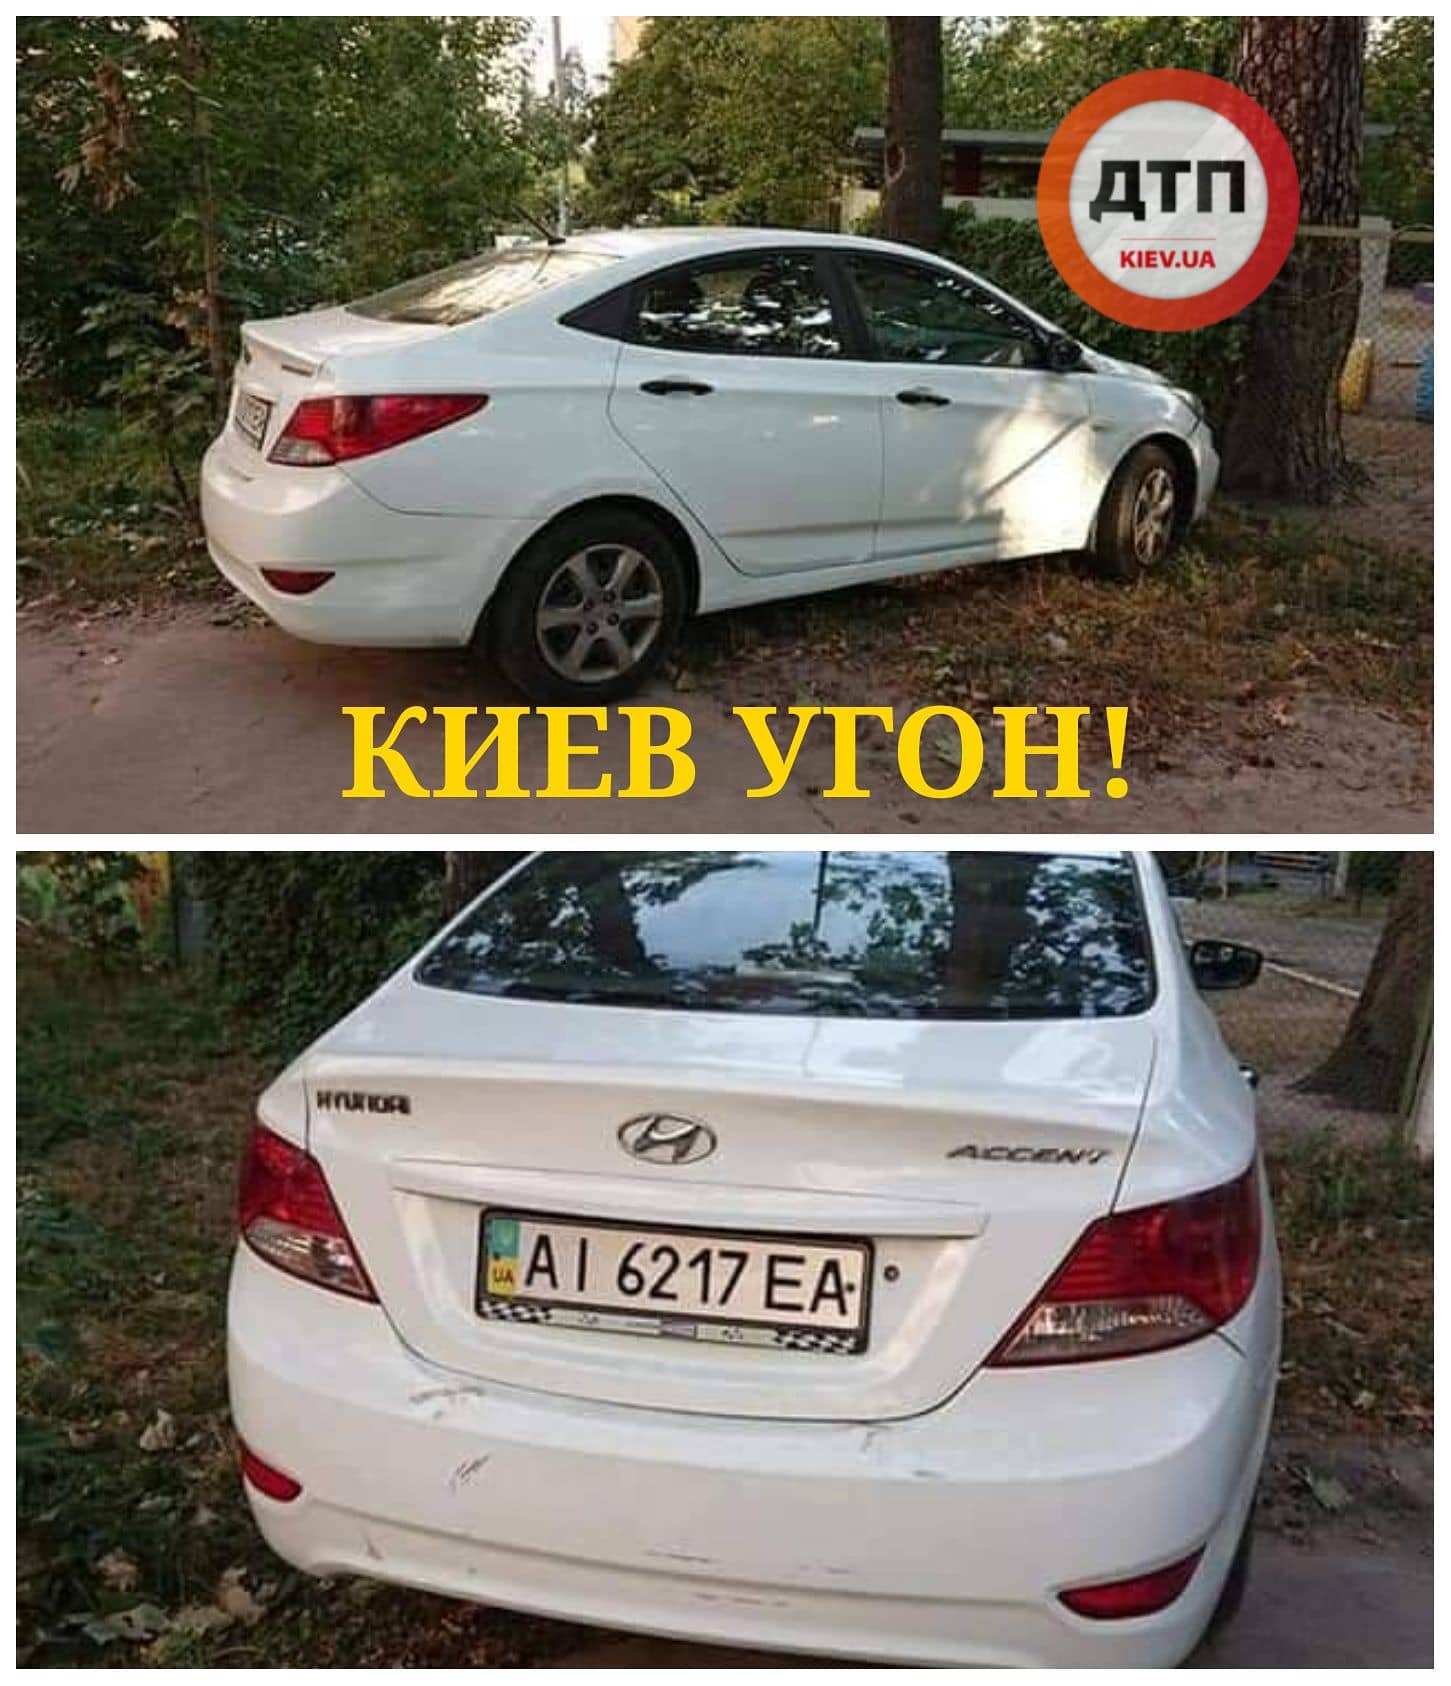 В Киеве ночью на Академгороке угнали автомобиль Hyundai Accent - AI 6217 EA